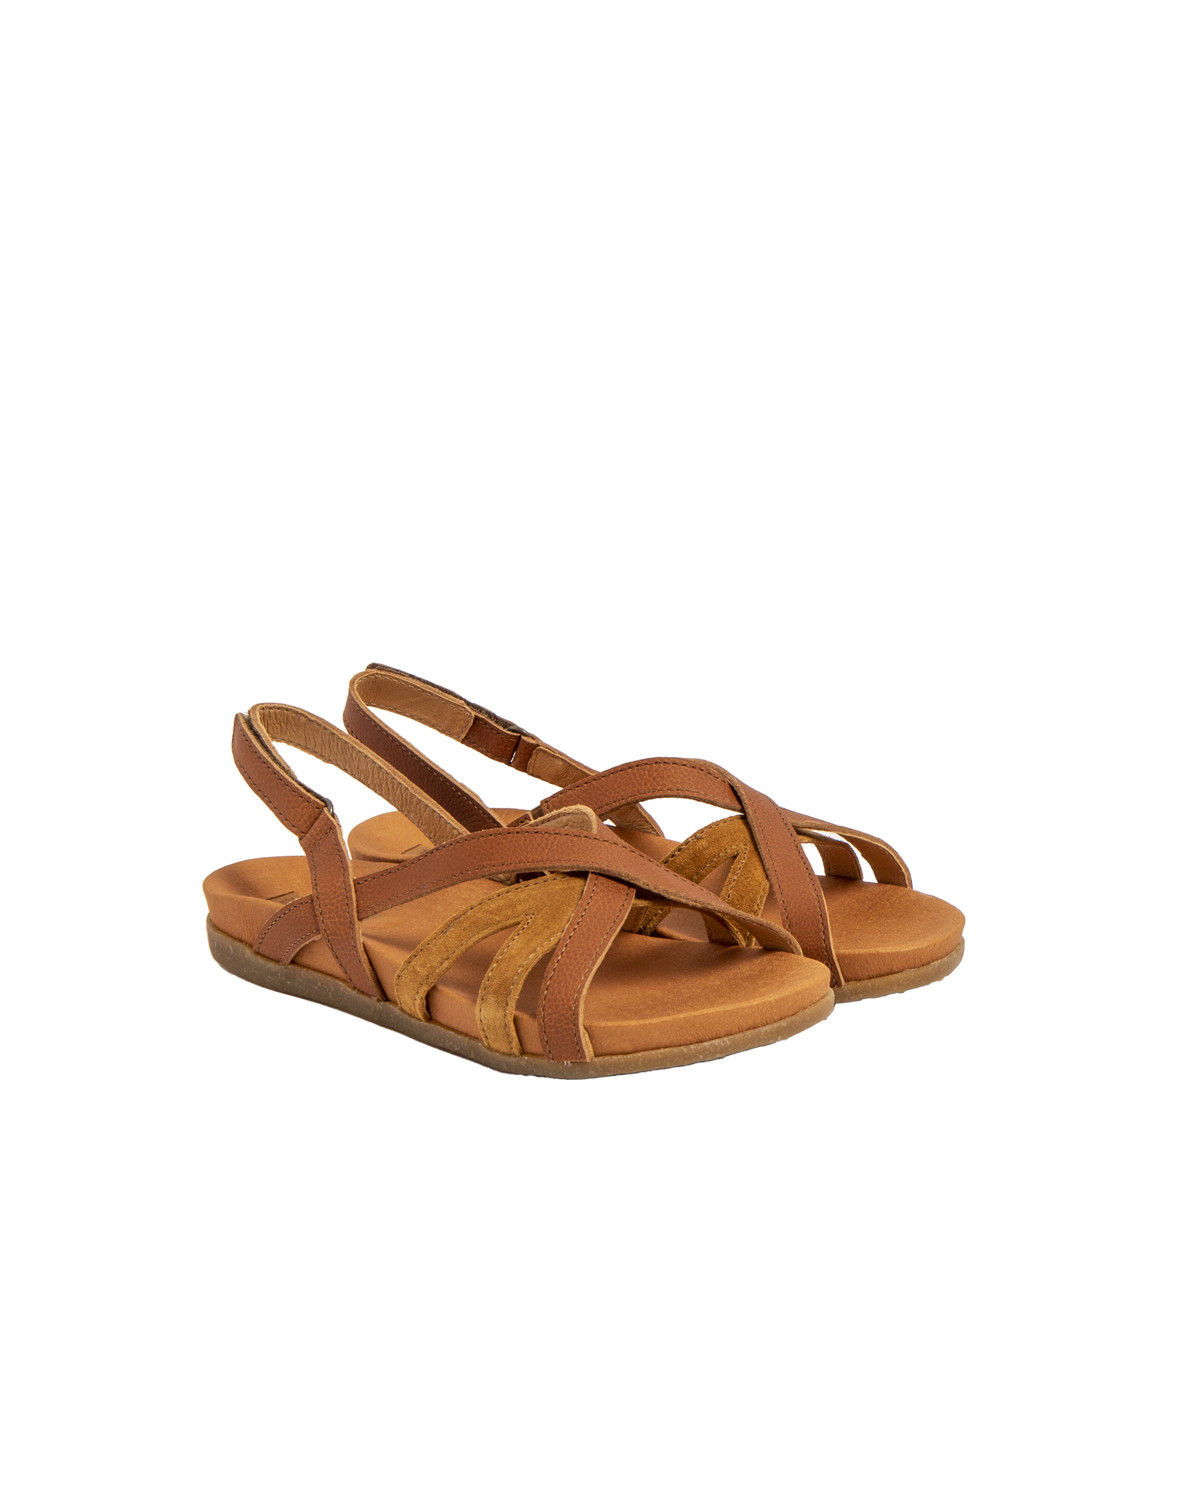 Sandales confortables plates en cuir à semelles ultra confort - Marron - El naturalista